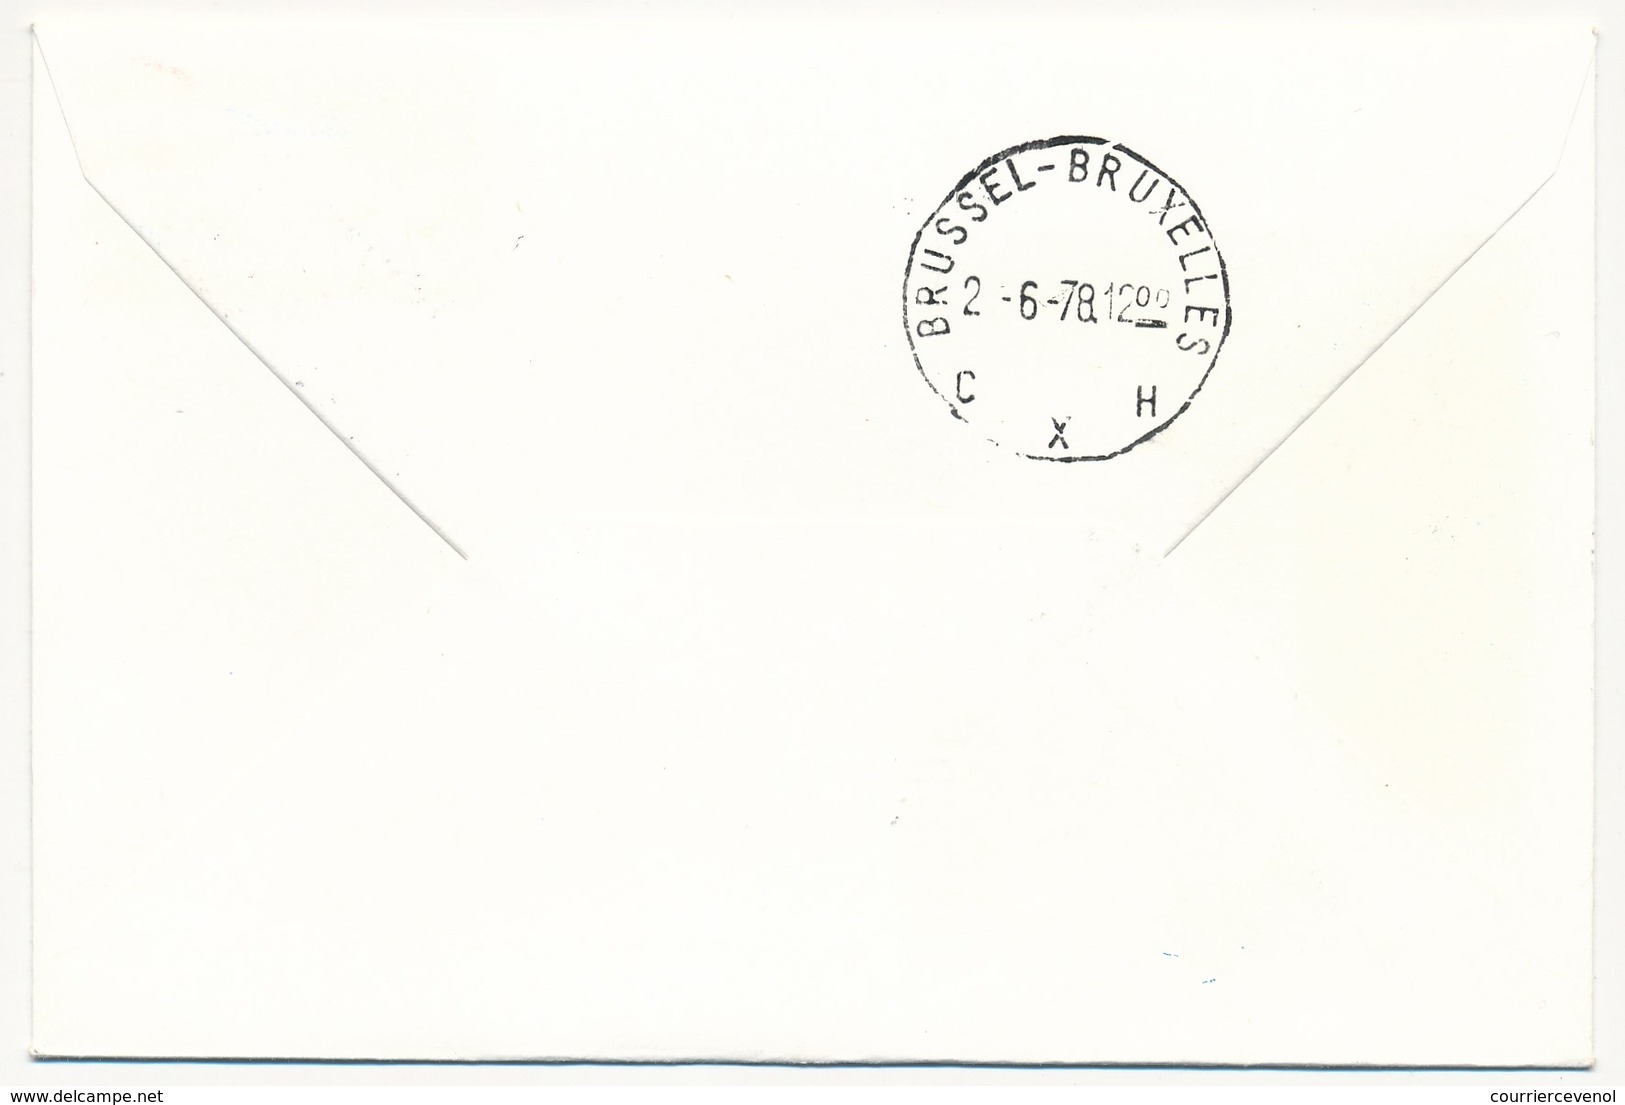 USA / BELGIQUE - 2 Enveloppes SABENA - 1ere Liaison Aérienne - ATLANTA BRUSSELS - 1.6.1978 Et Retour - 3c. 1961-... Storia Postale